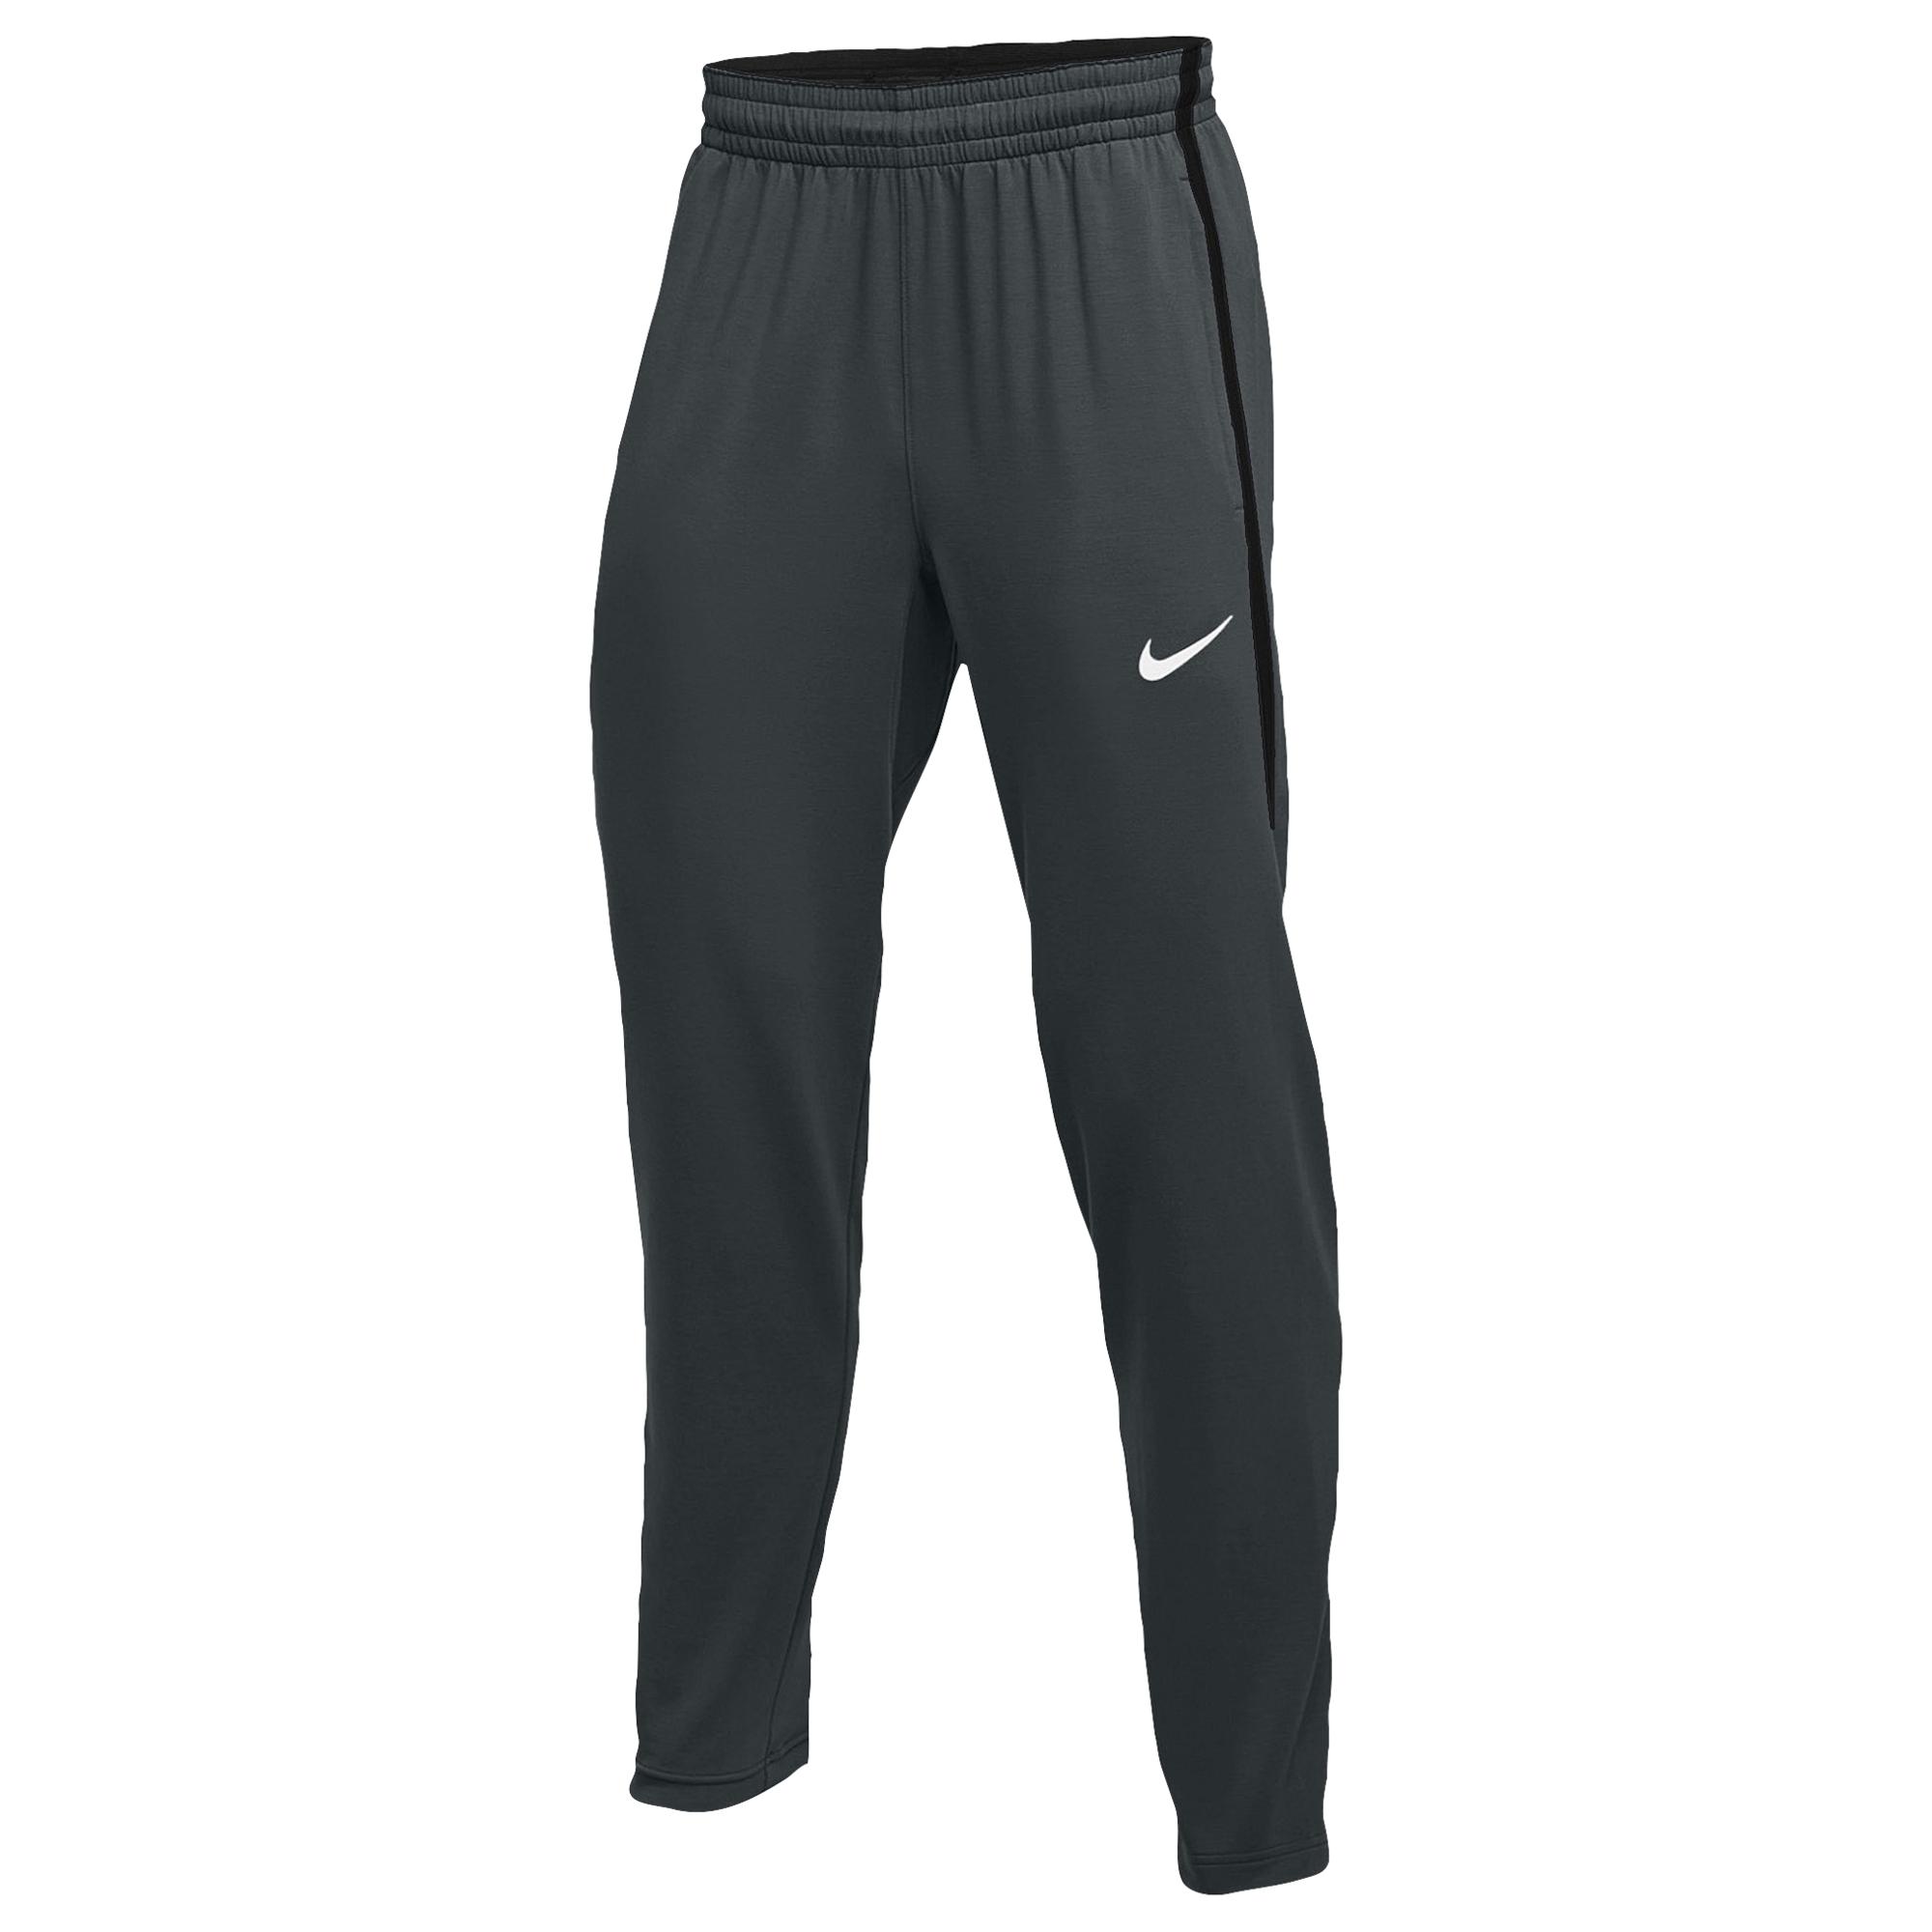 Nike Team Hyperelite Fleece Pants in Black for Men - Lyst